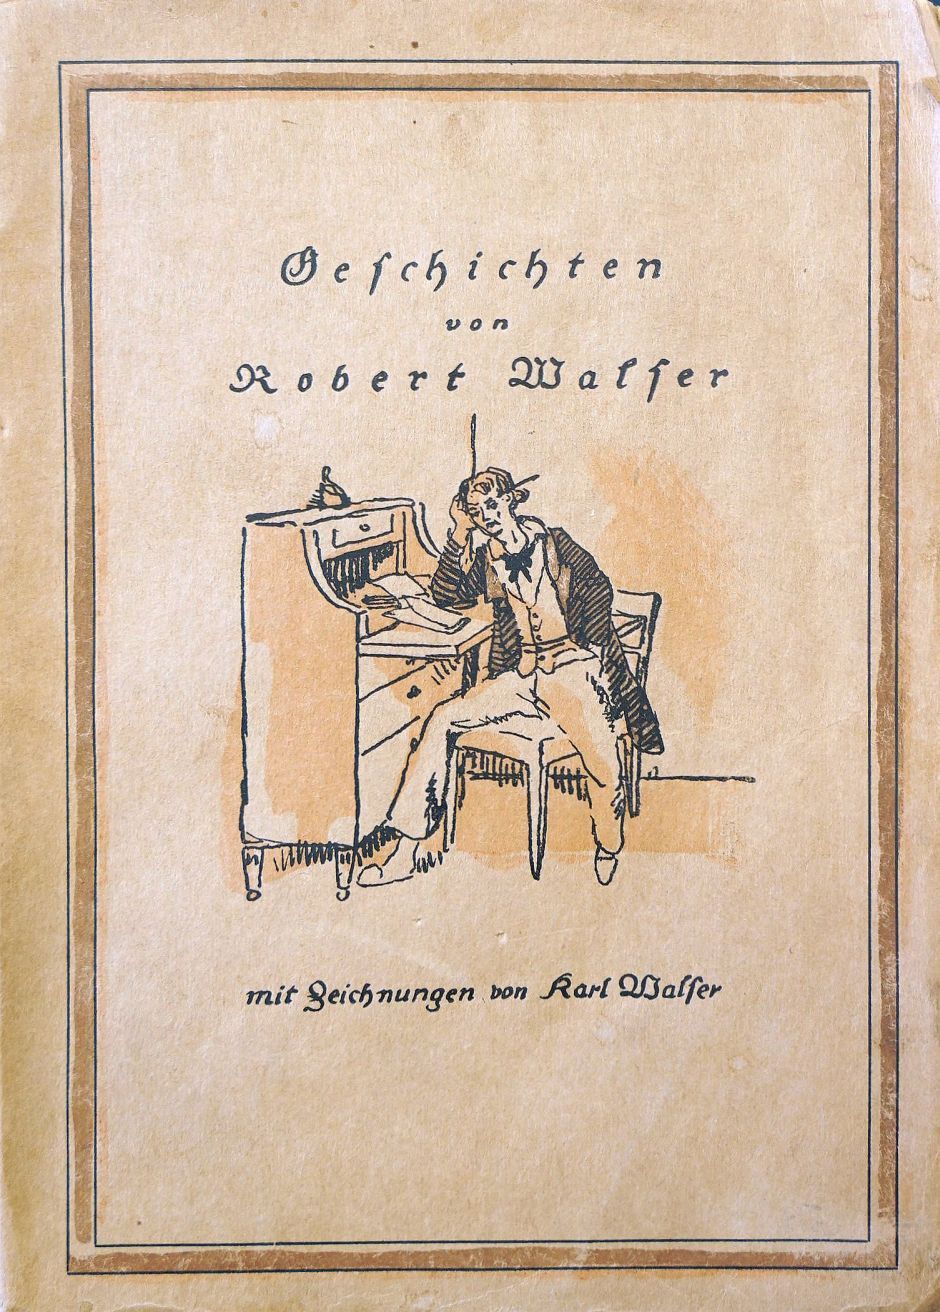 Lot 3462, Auction  115, Walser, Robert und Walser, Karl - Illustr., Geschichten